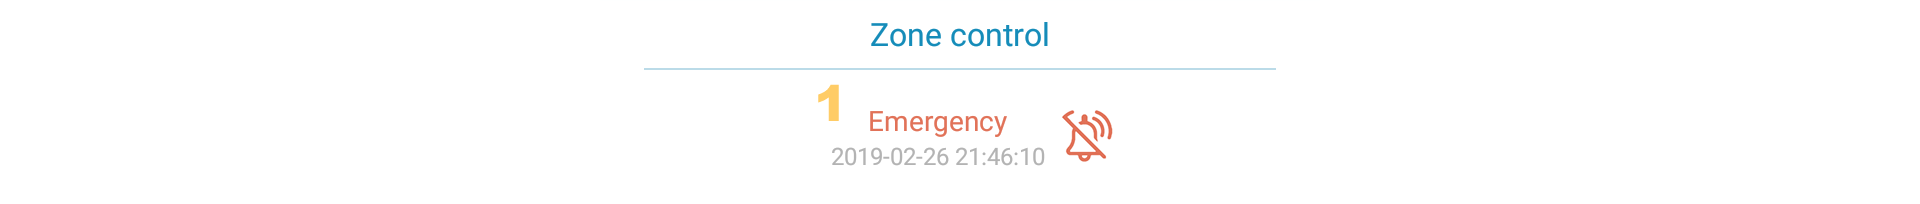 zone control